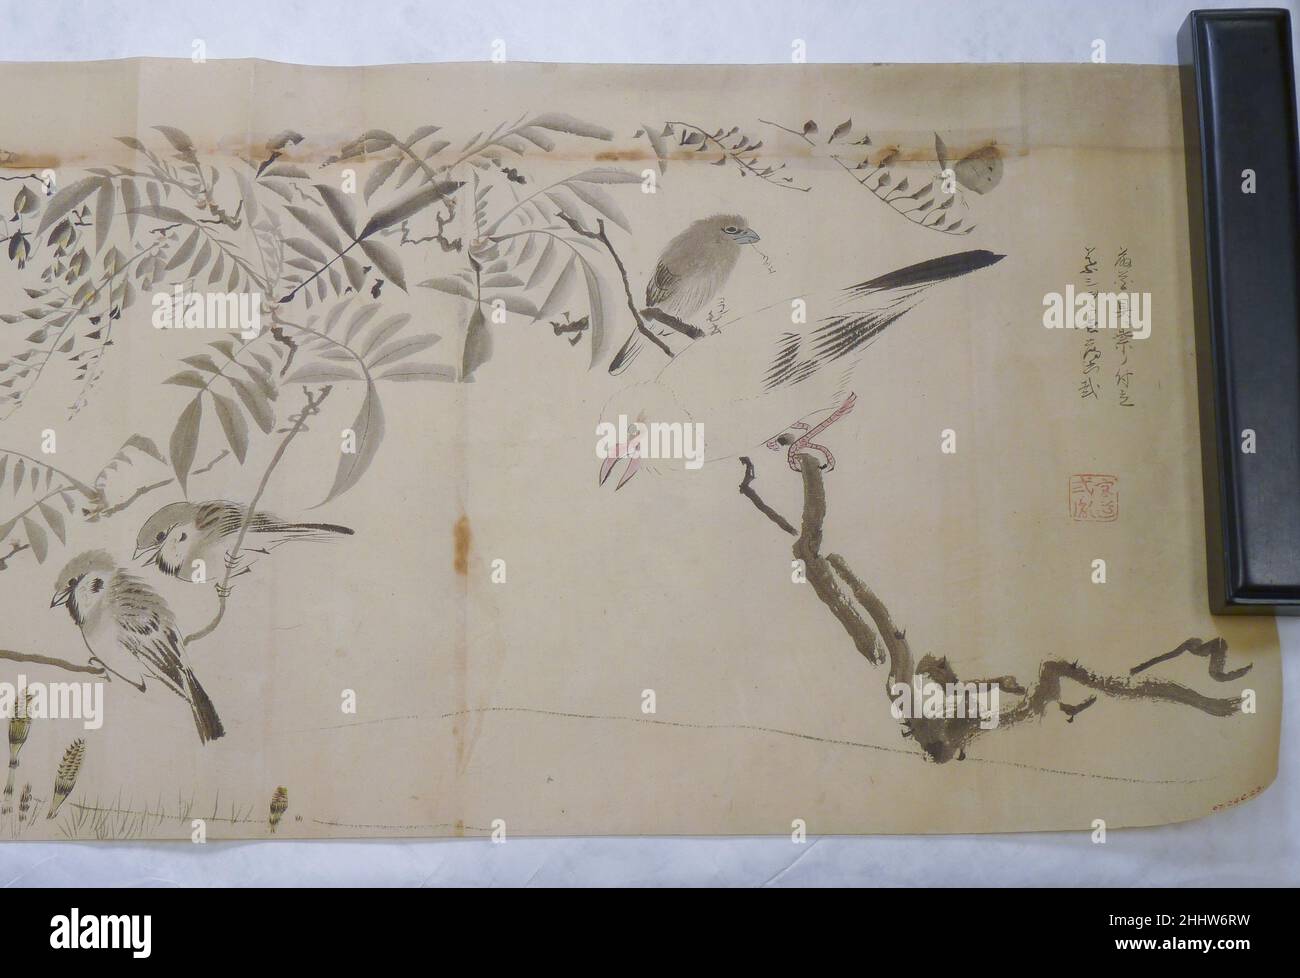 Dessin japonais début du 19th siècle Japon dessin d'oiseaux sur une vigne de wisteria.Dessin japonais.Japon. Début du 19th siècle.Sur papier.Période Edo (1615–1868).Peintures Banque D'Images